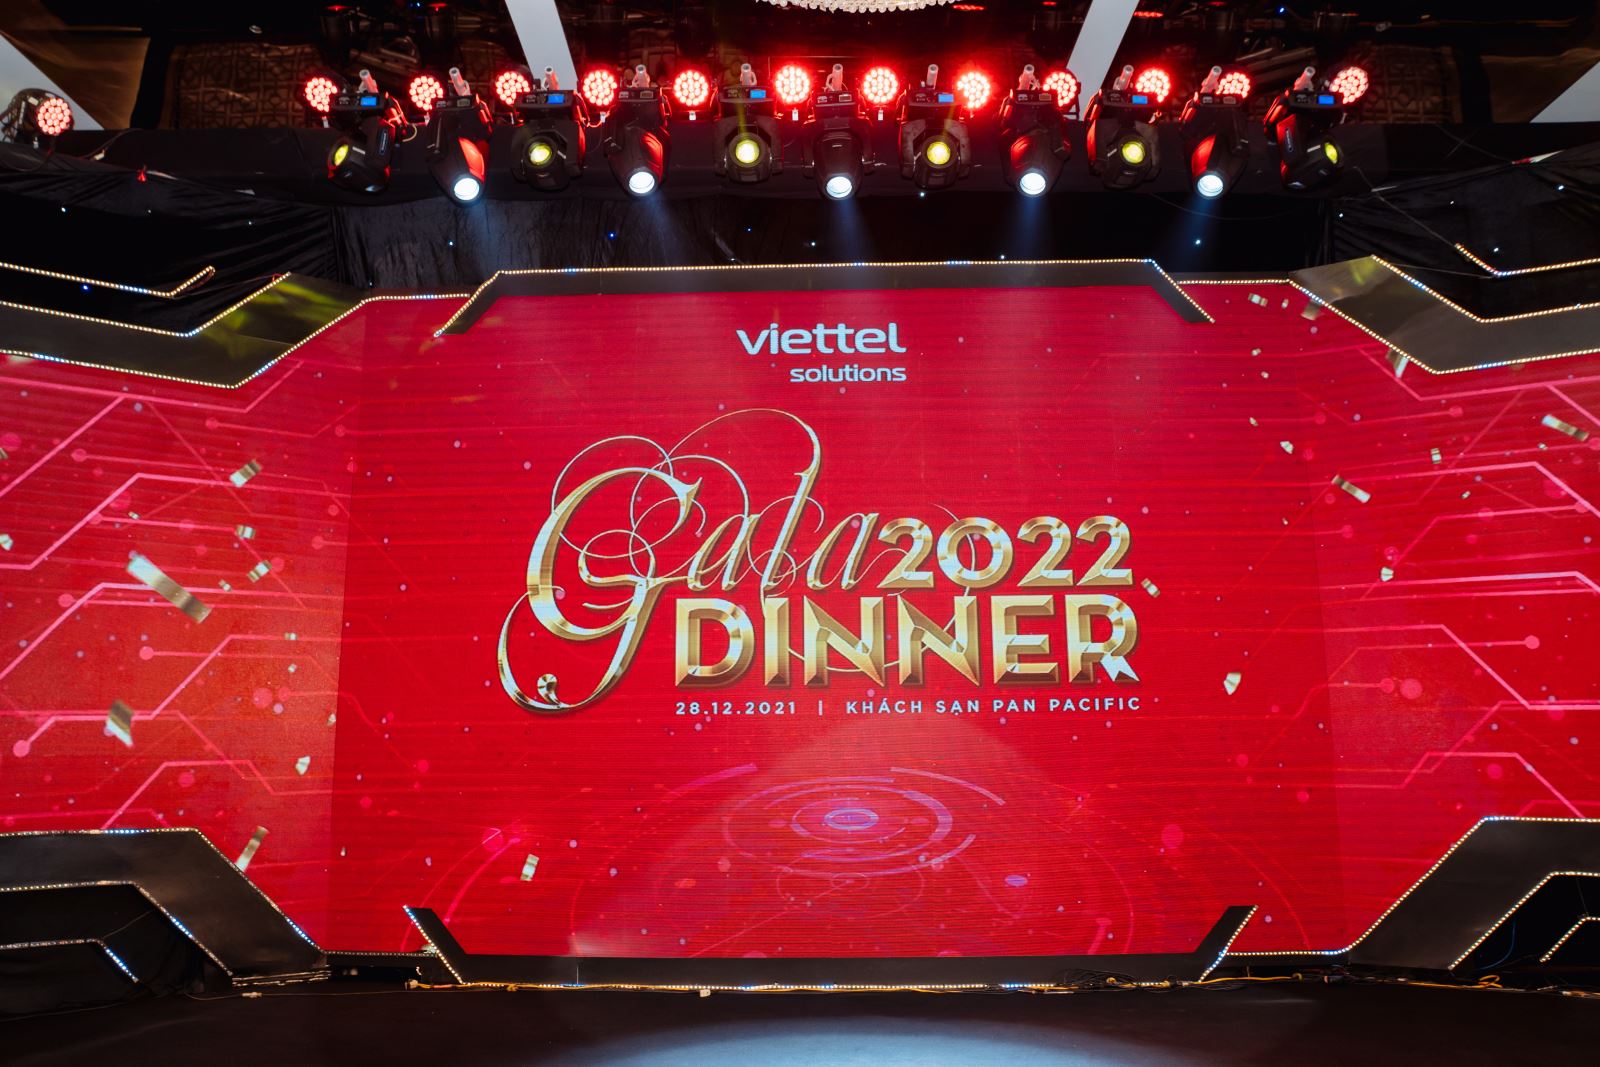 GHD Gala dinner 2022 - 